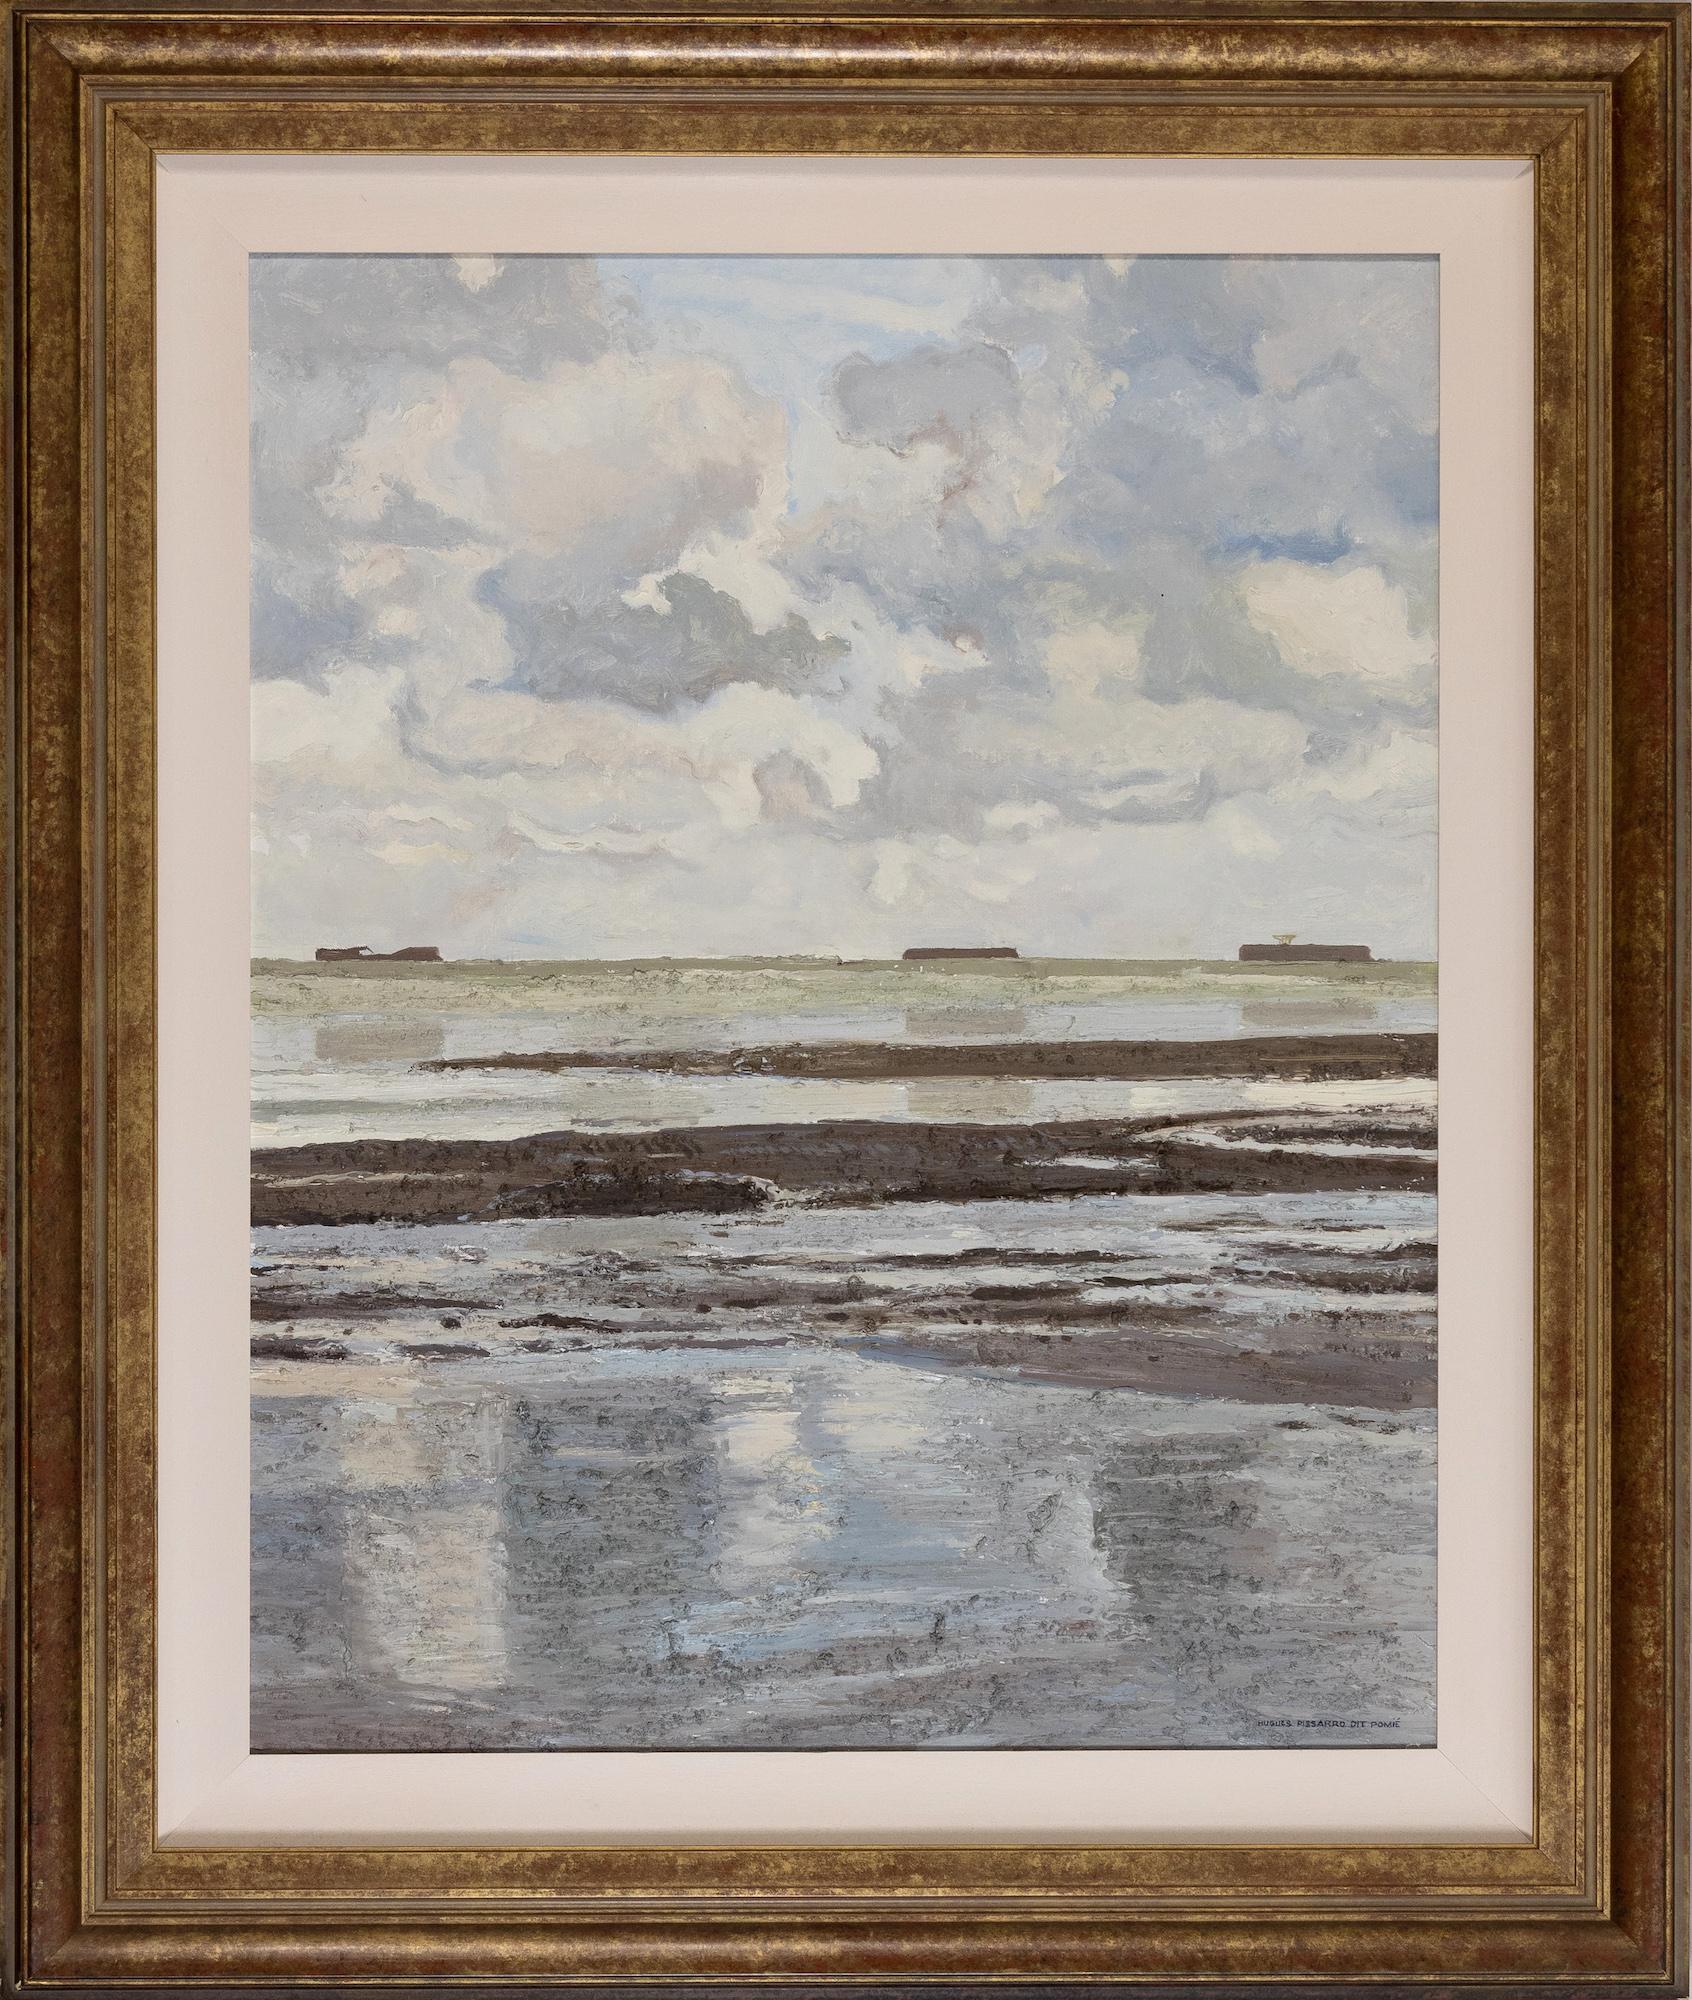 Petite Marine Grise by Hugues Pissarro dit Pomié - Oil painting, Landscape - Painting by Hughes Claude Pissarro